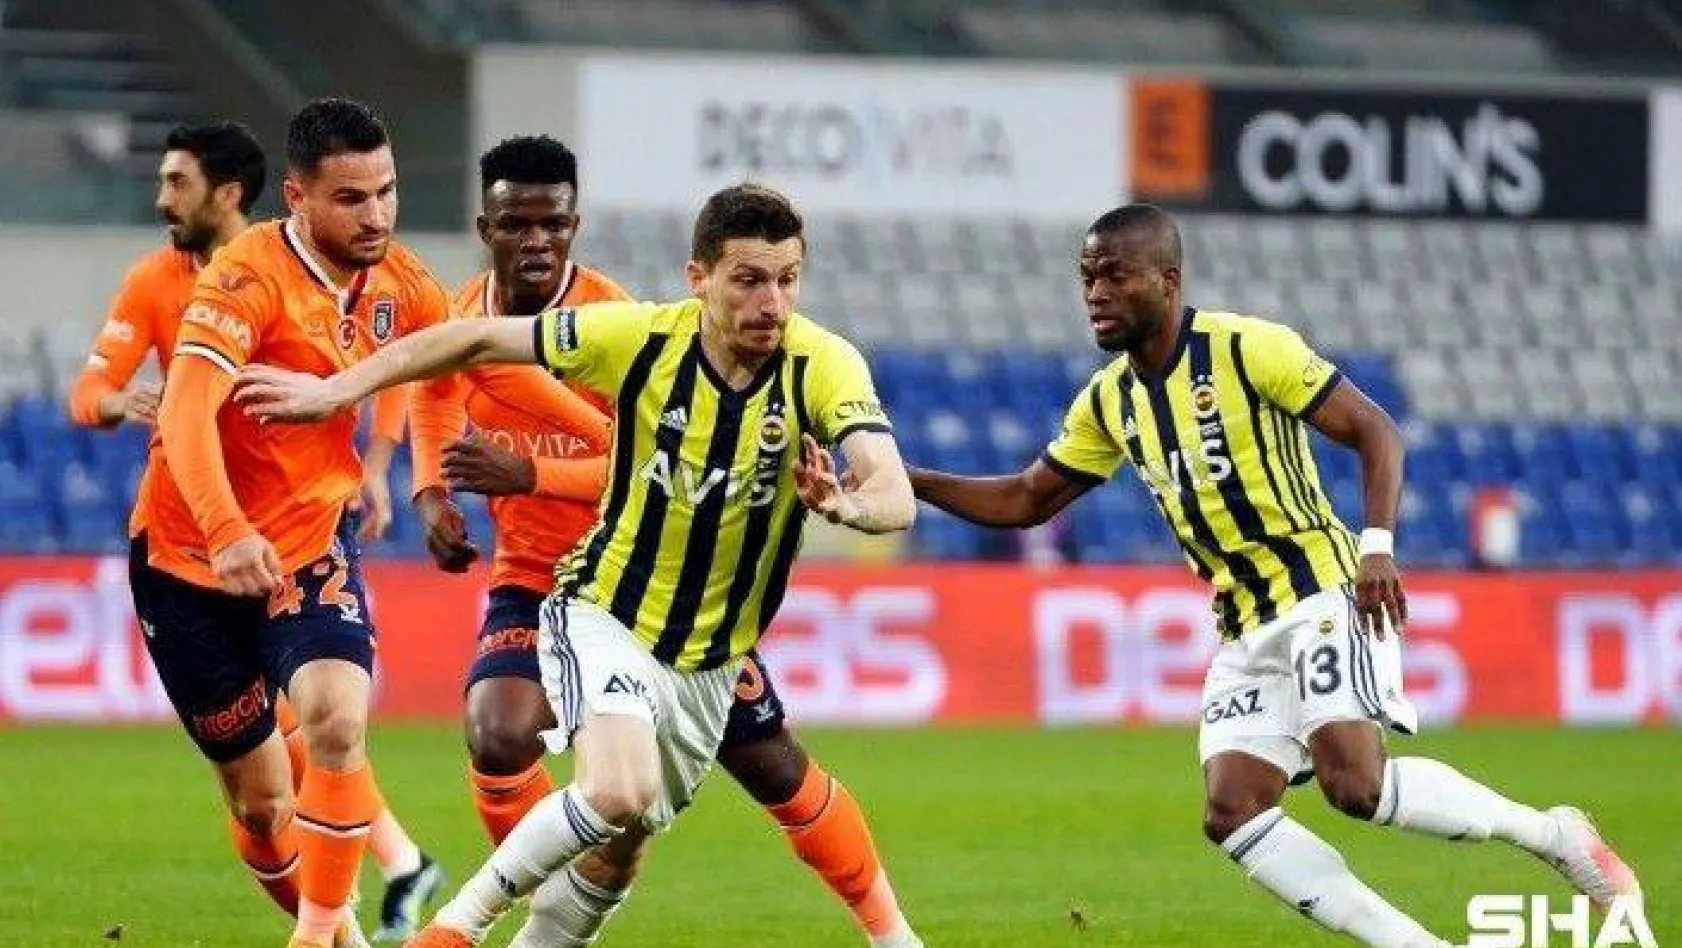 Süper Lig: Medipol Başakşehir: 1 - Fenerbahçe: 0 (Maç devam ediyor)